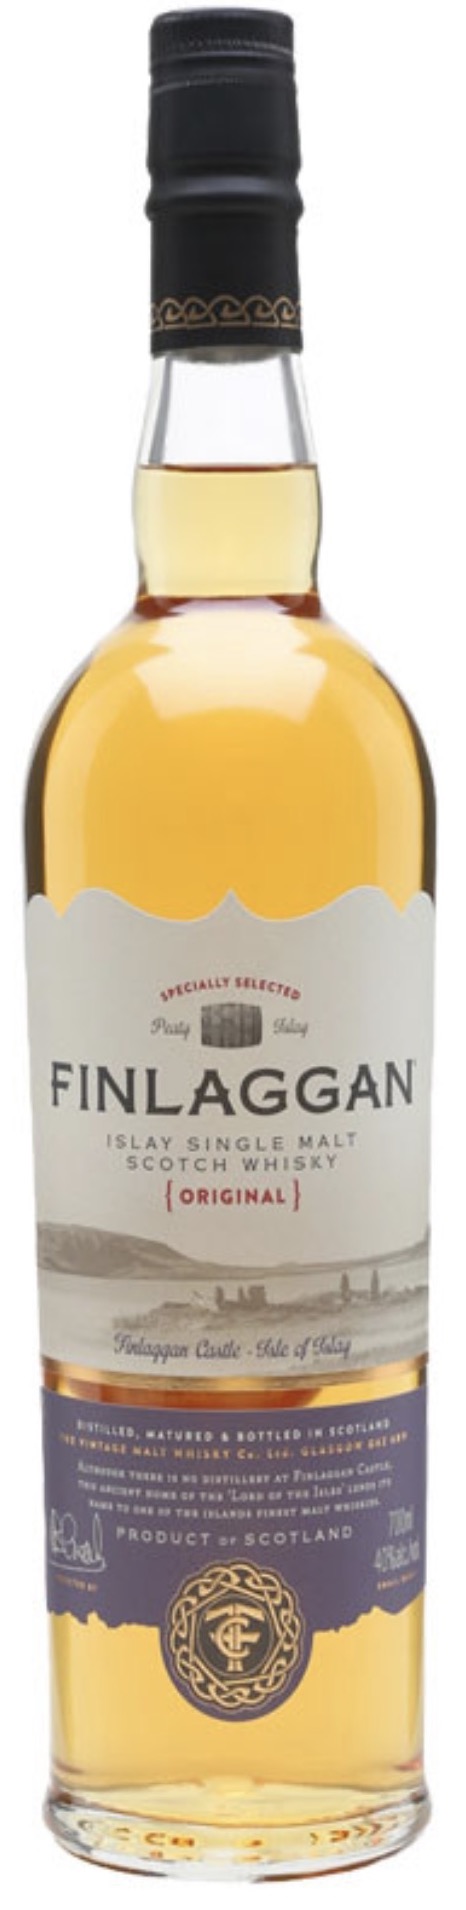 Finlaggan The Original Islay Single Malt Scotch Whisky 40% 0,7L